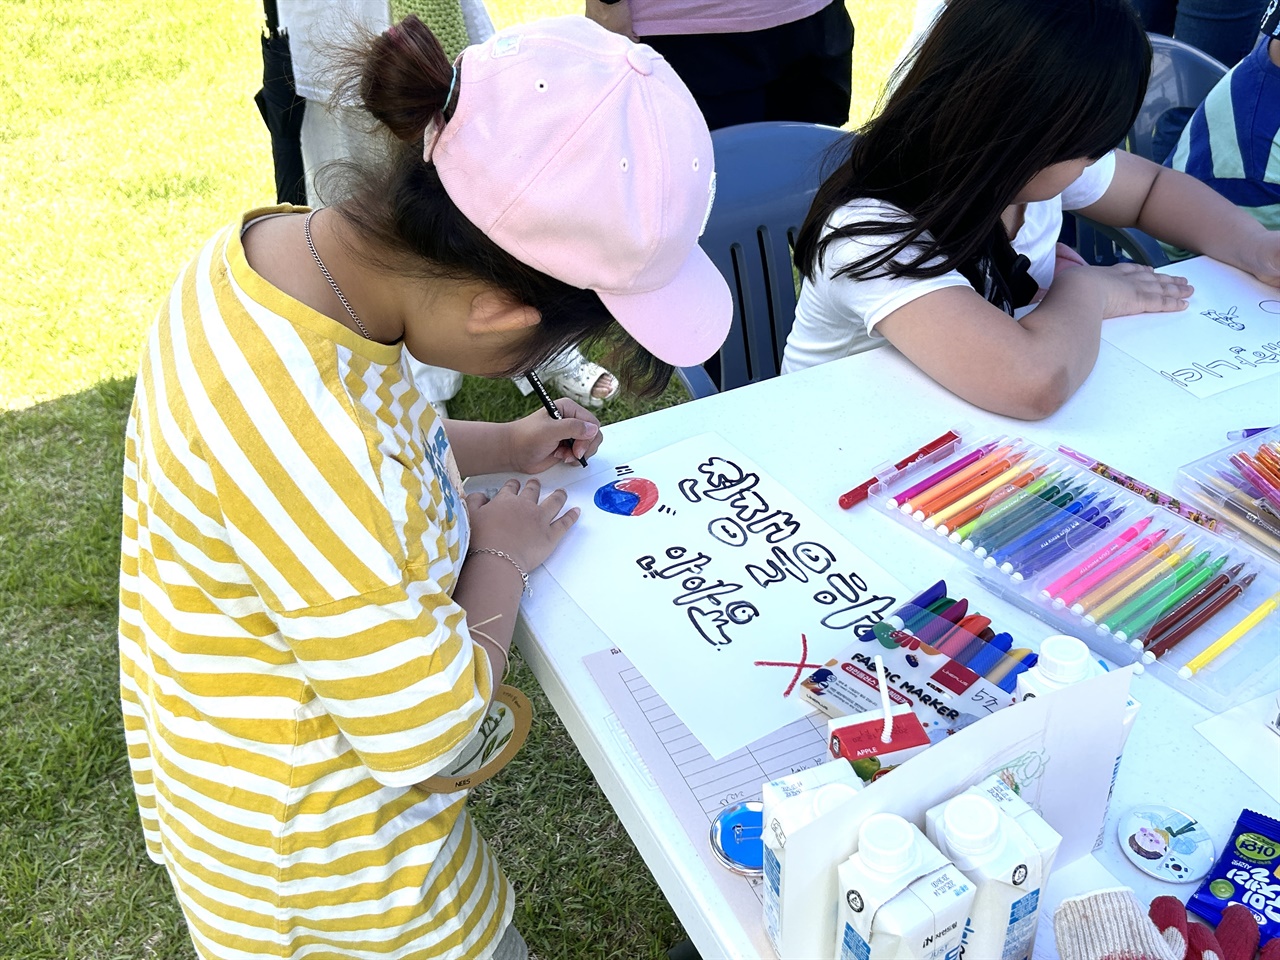 전쟁반대 그림그리기 행사에서 한 어린이가 그림을 그리고 있다. 